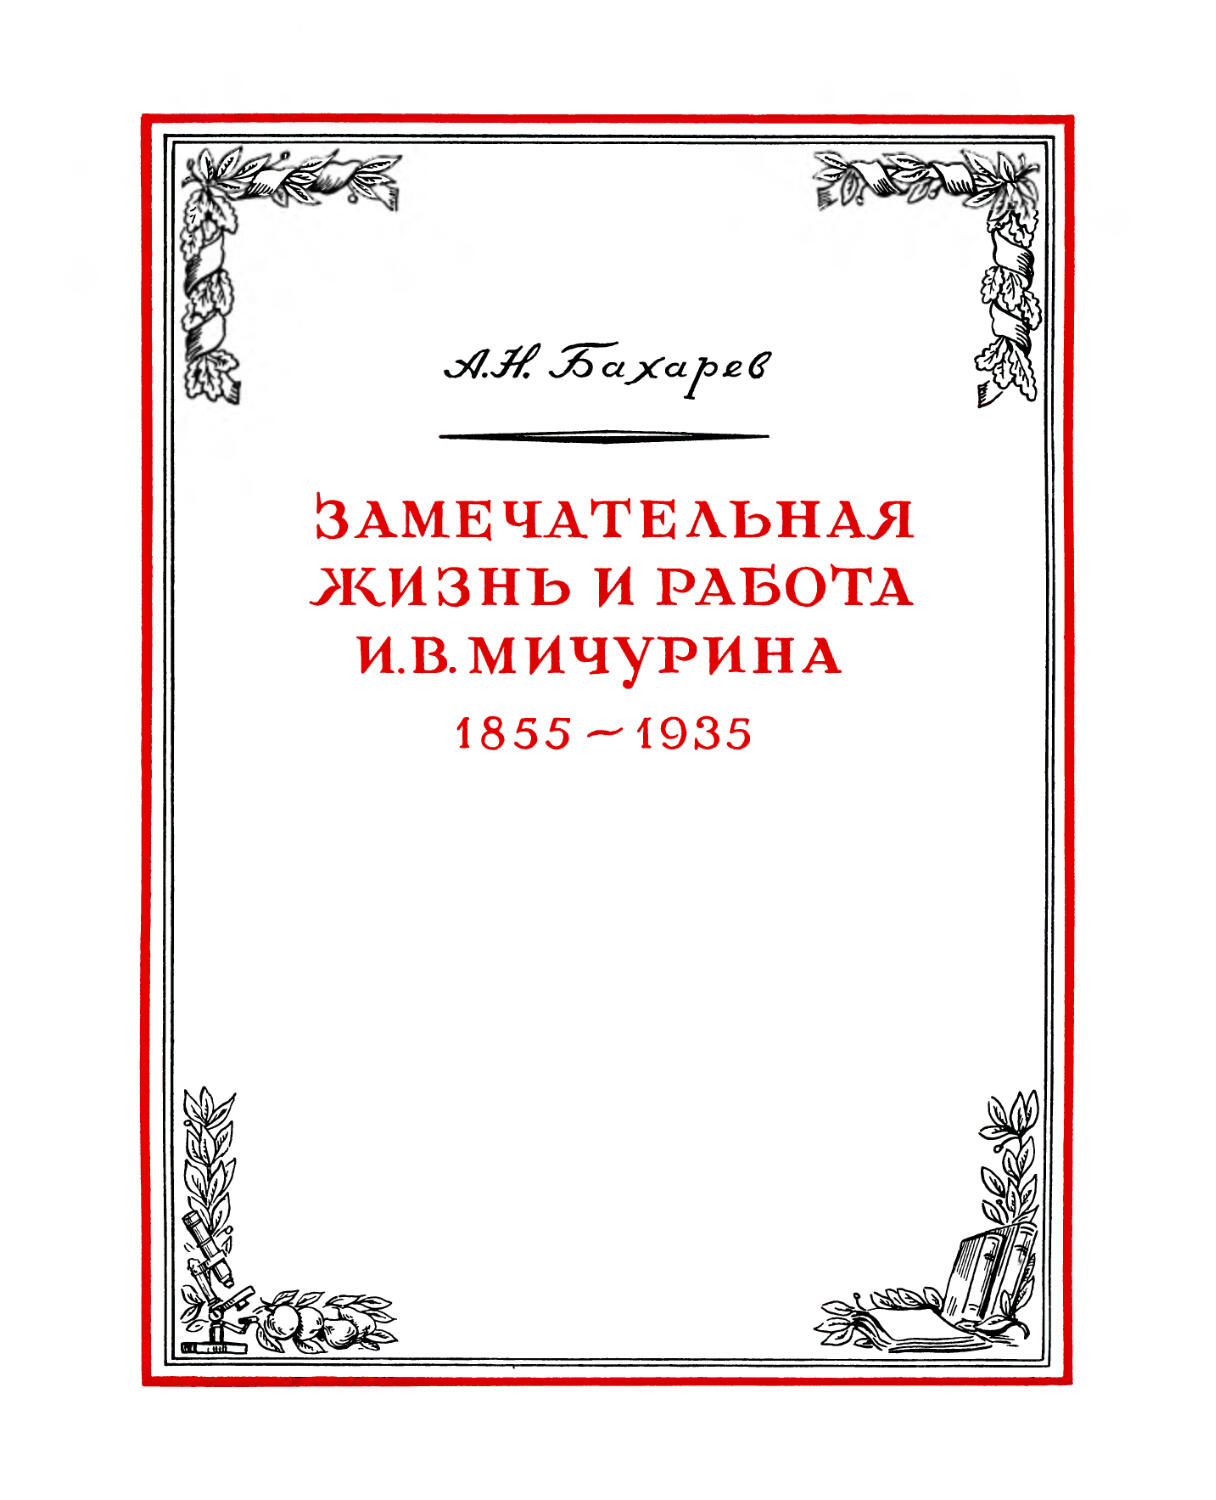 А. Бахарев. ЗАМЕЧАТЕЛЬНАЯ ЖИЗНЬ И РАБОТА И. В. МИЧУРИНА. 1855-1935